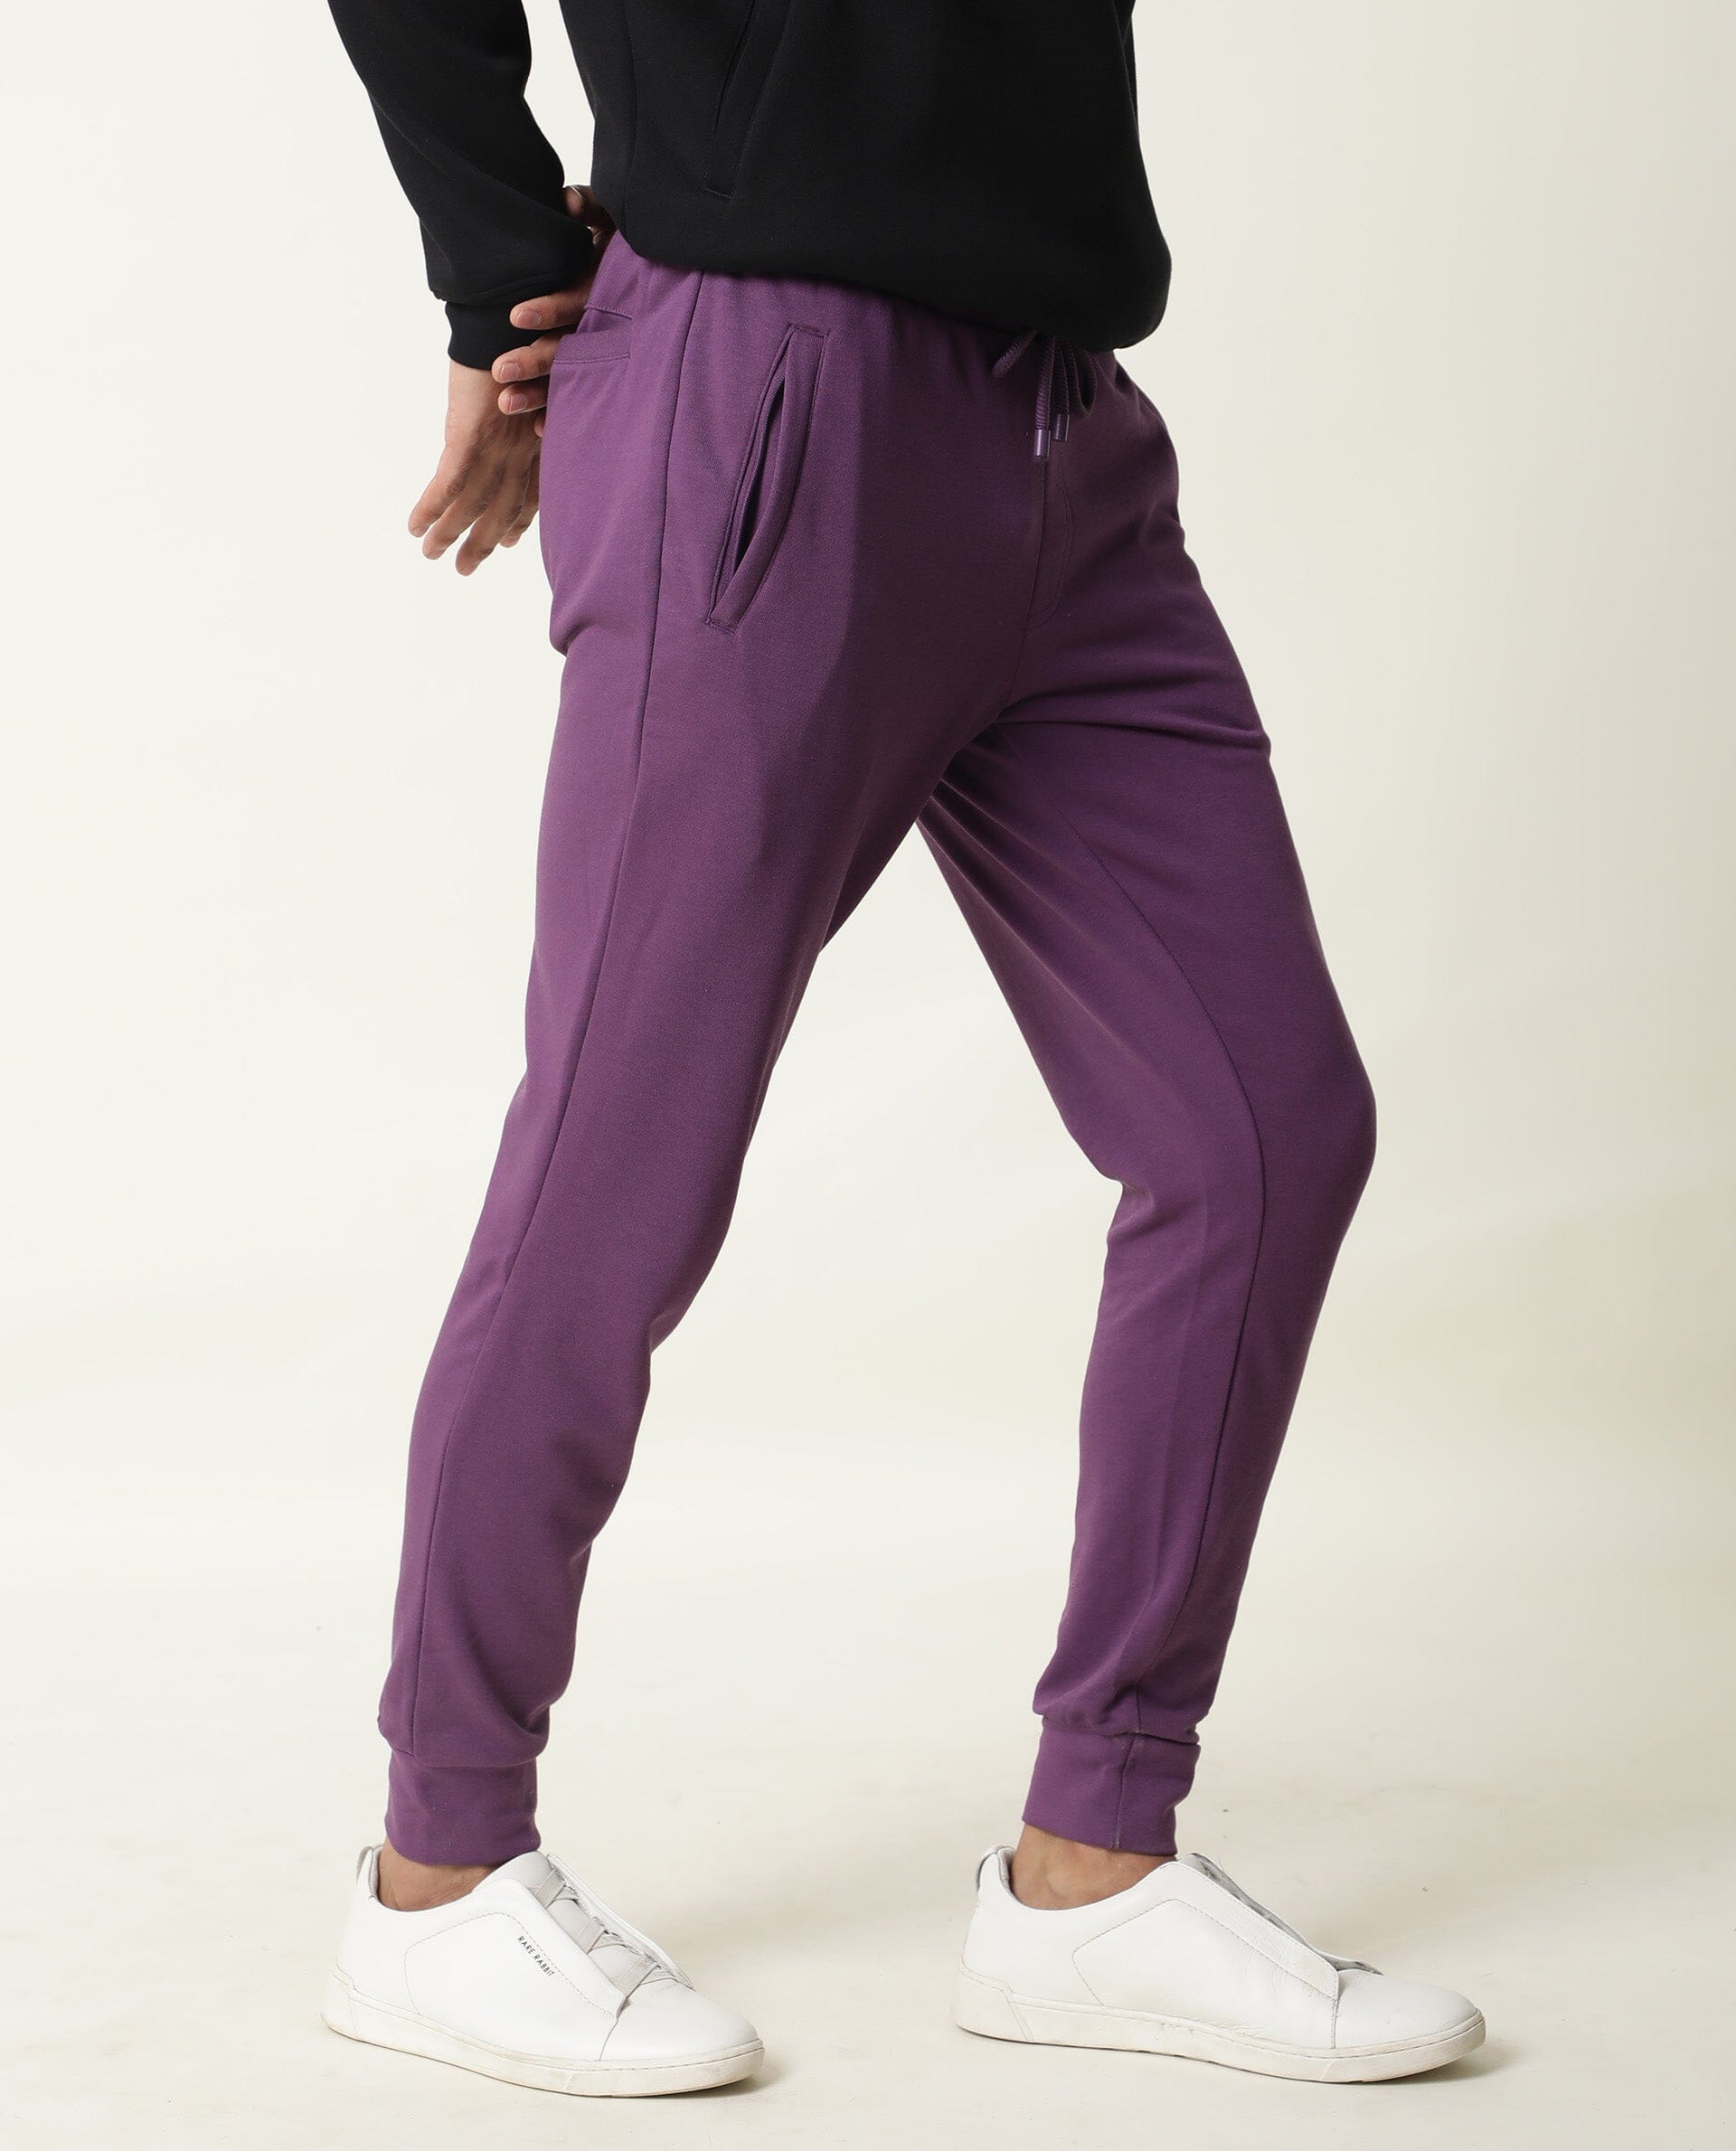 Buy Mens Purple Track Pants for Men Online at Bewakoof